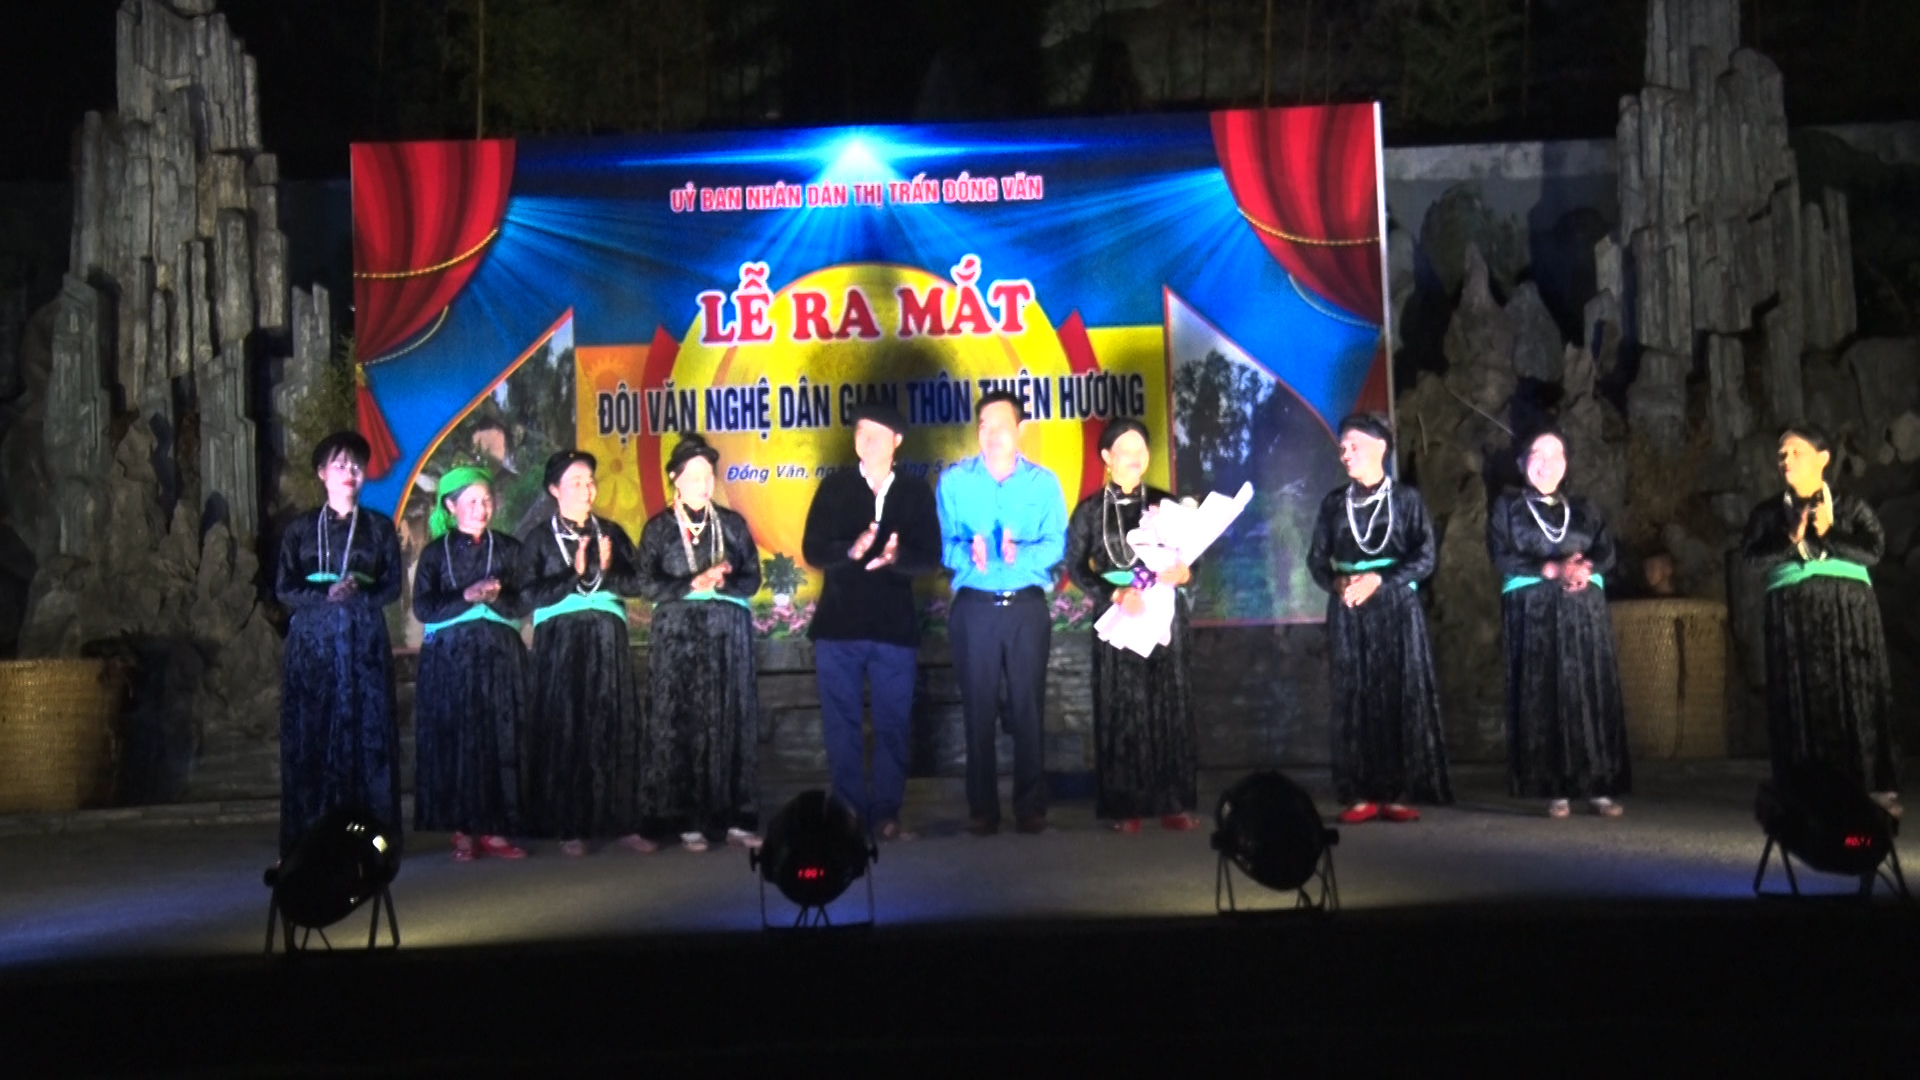 Lễ ra mắt đội văn nghệ dân gian thôn Thiên Hương, thị trấn Đồng Văn